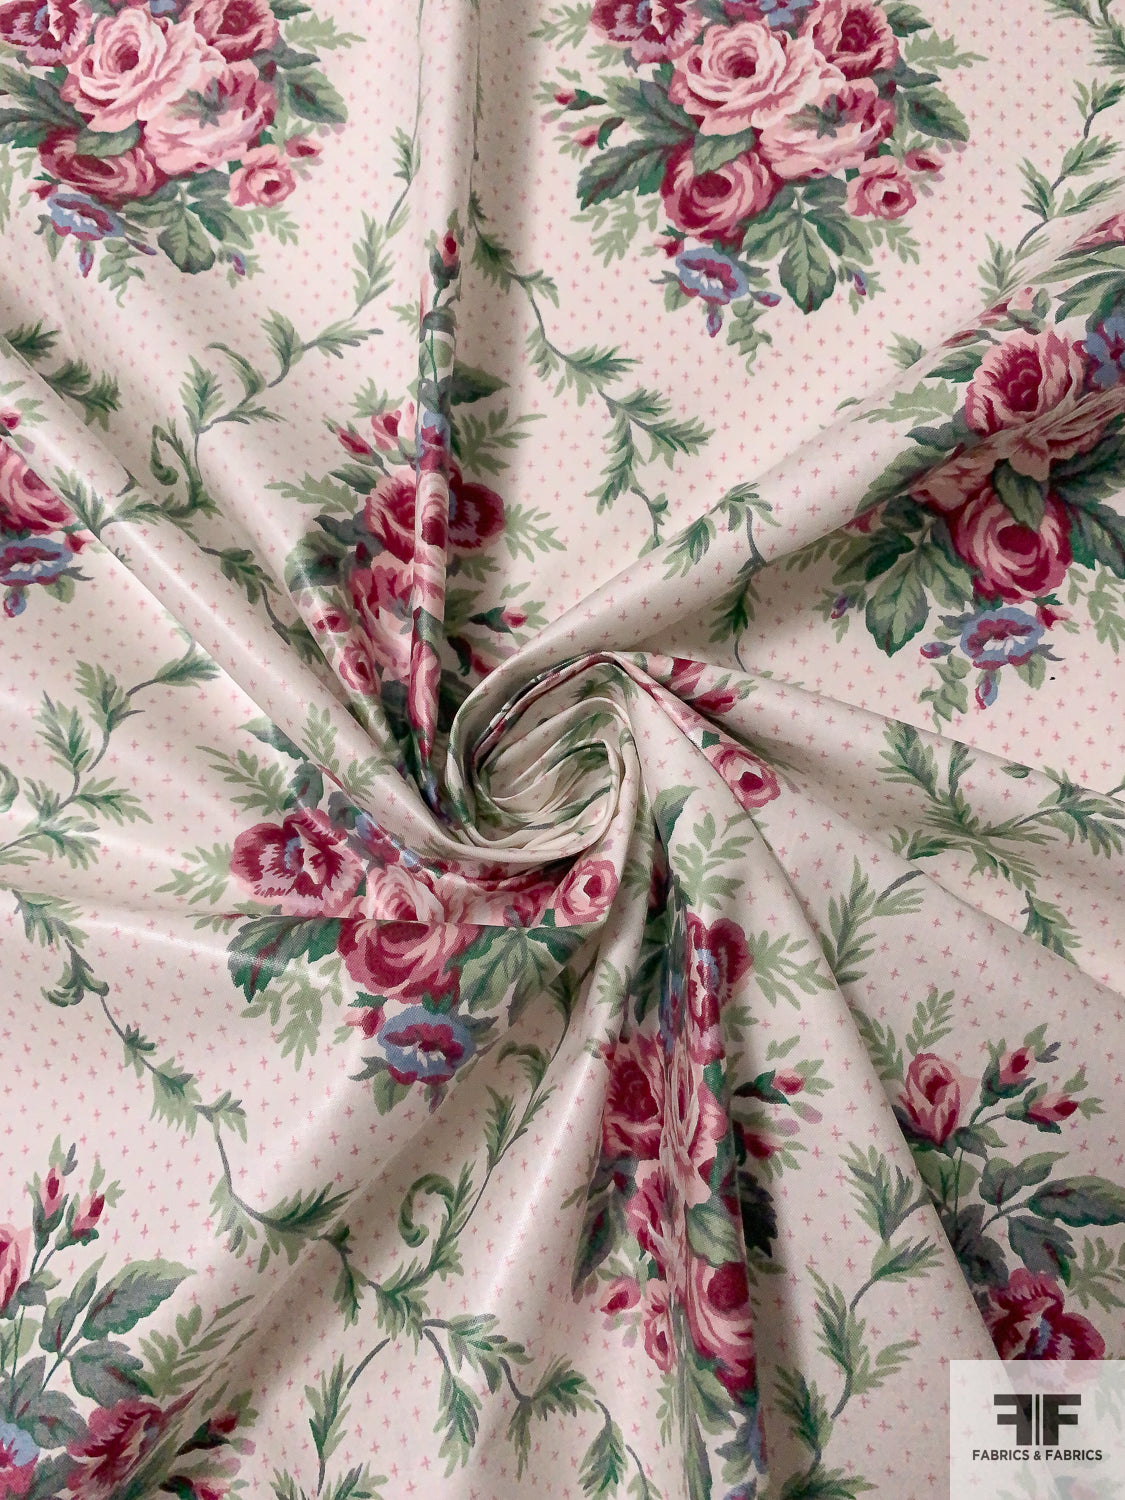 Designer Velvet Upholstery Fabric - Soft Leaf Green